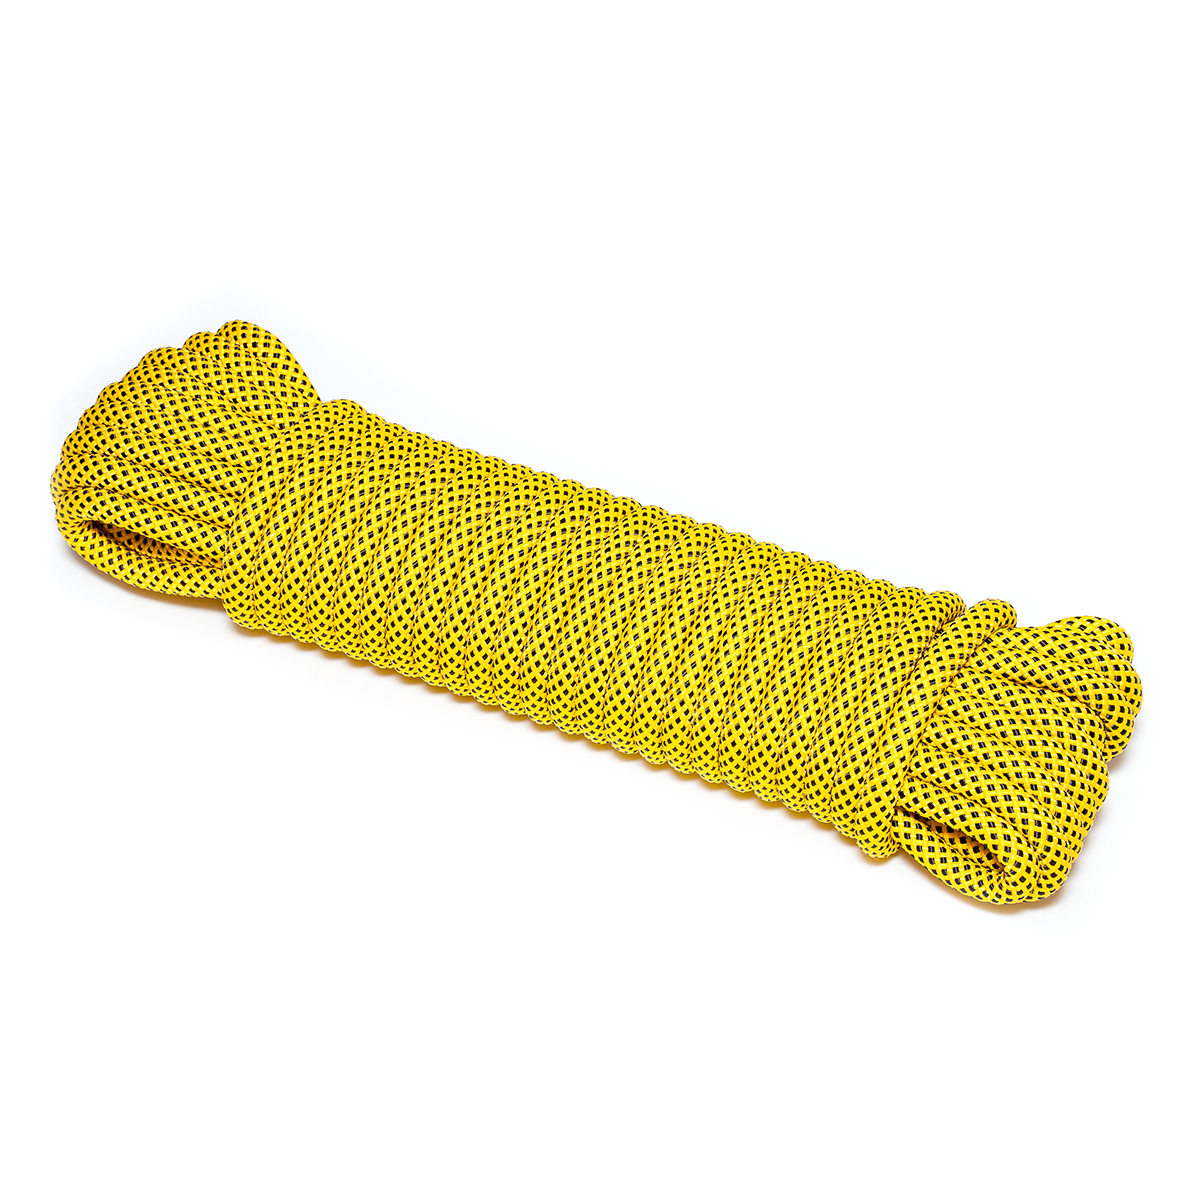 Шнур плетеный ЭКСТРИМ 12.0 мм, черно-желтый, 1400 кг, 20 м шнур для вязания 100% полиэфир 1мм 200м 75±10гр 18 джинс